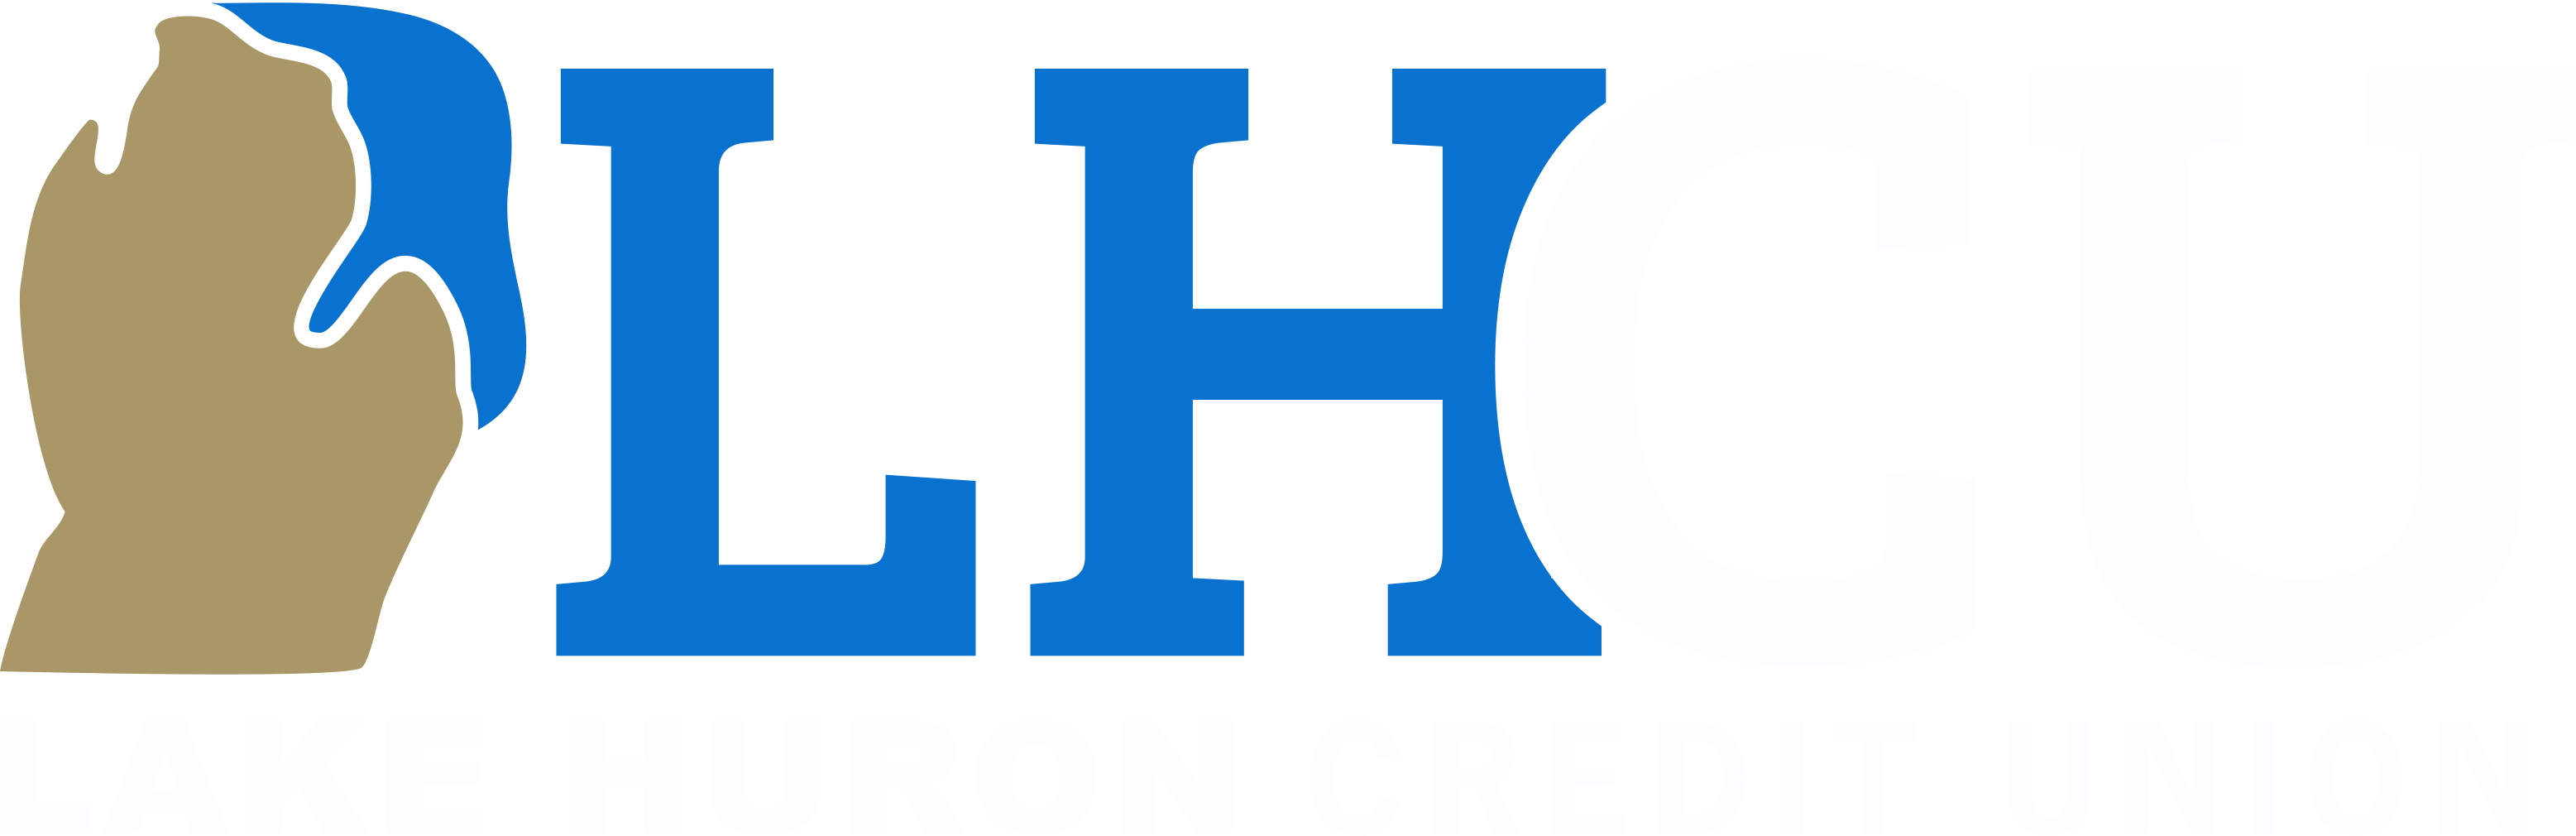 Lake Huron Credit Union - Lake Huron Credit Union (3114x1010)